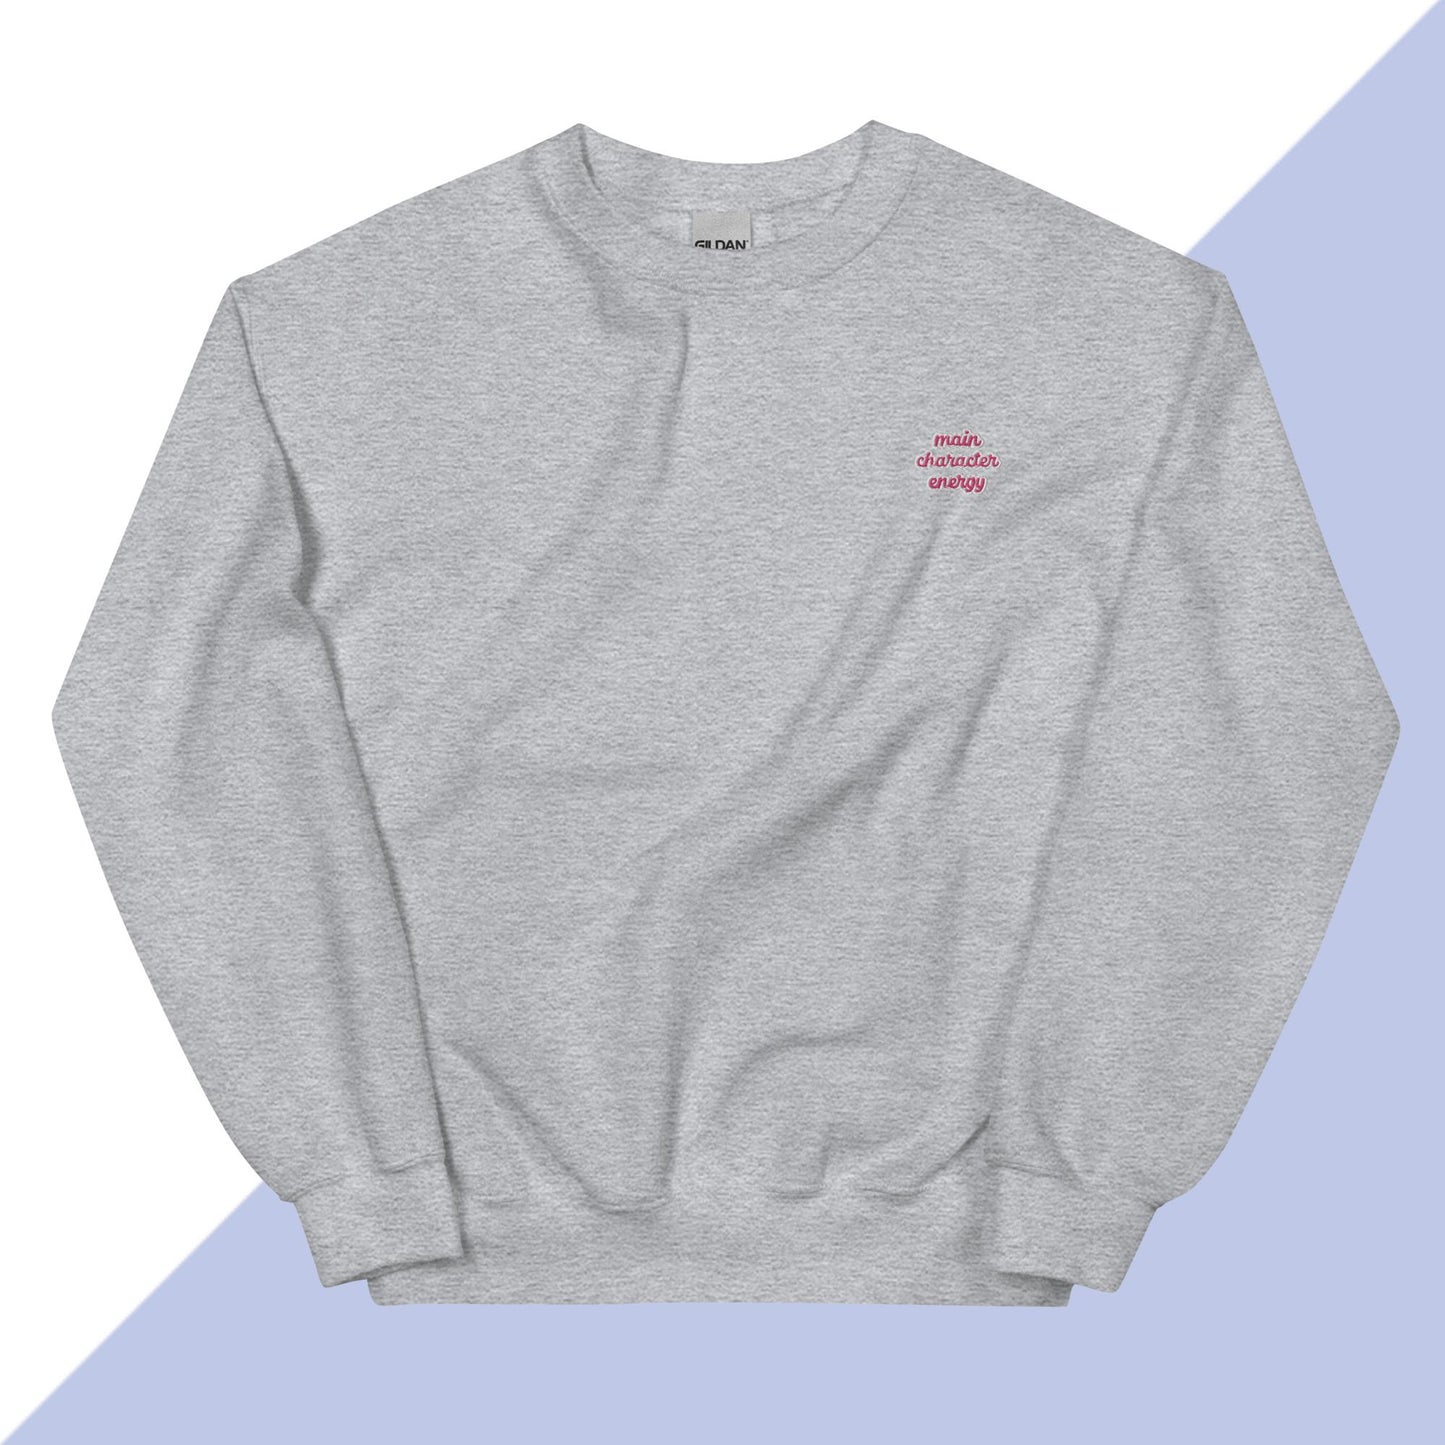 MAIN CHARACTER ENERGY - Embroidered Unisex Sweatshirt